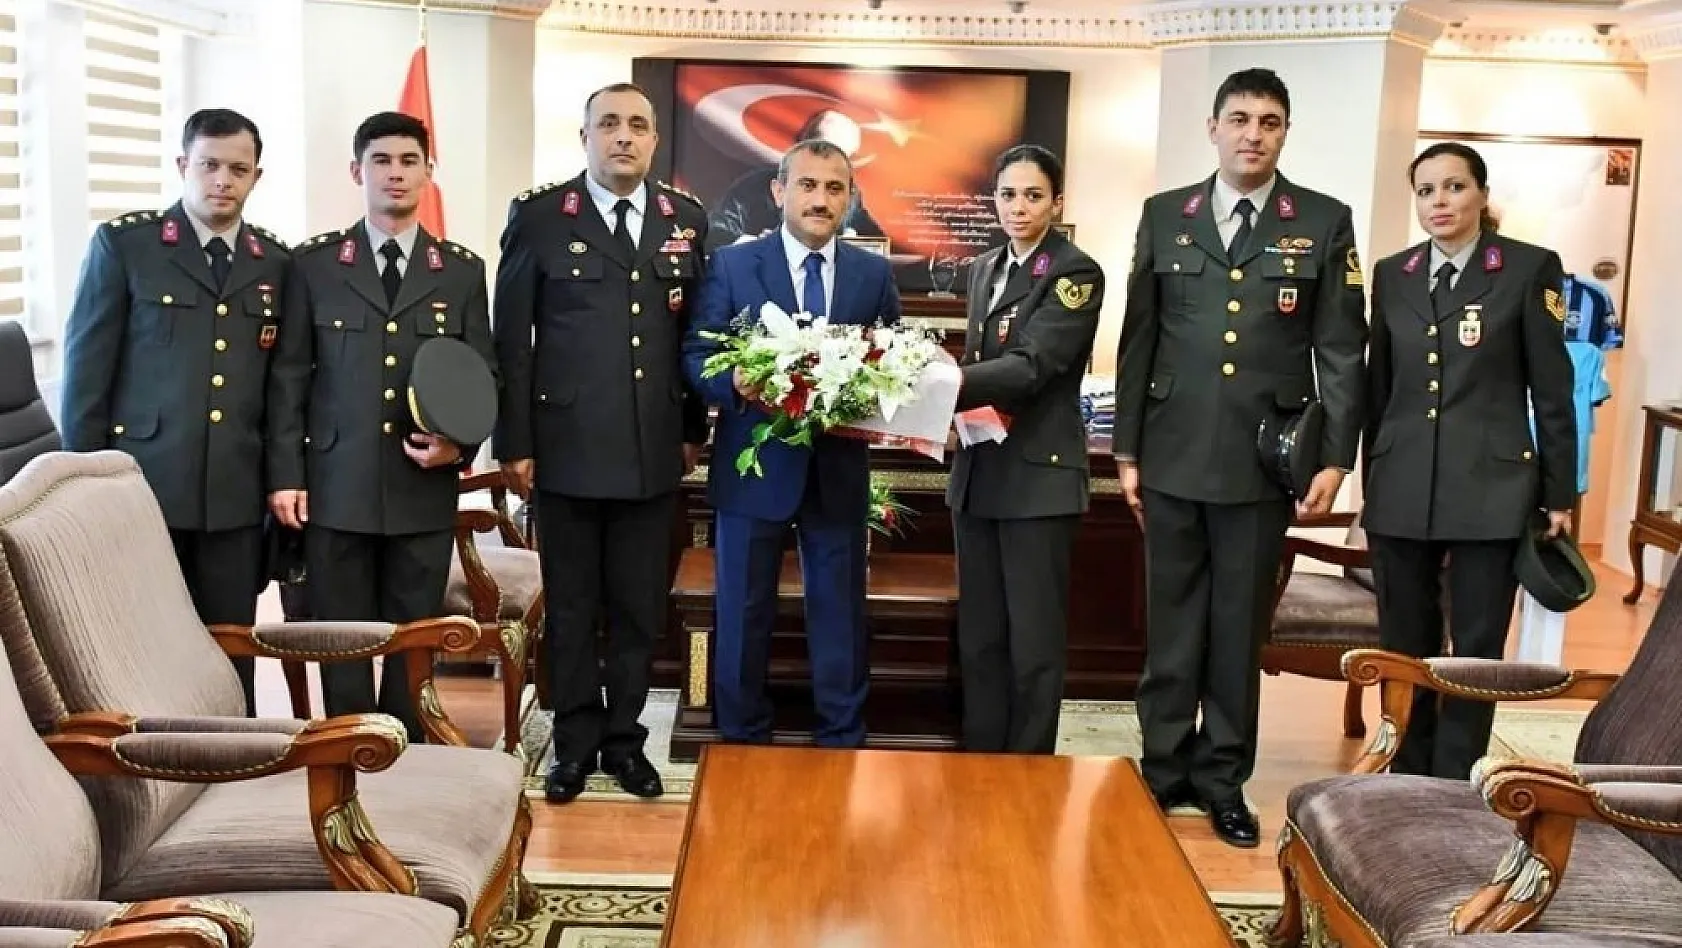 Tunceli'de Jandarma Teşkilatının 179'uncu kuruluş yıl dönümü 